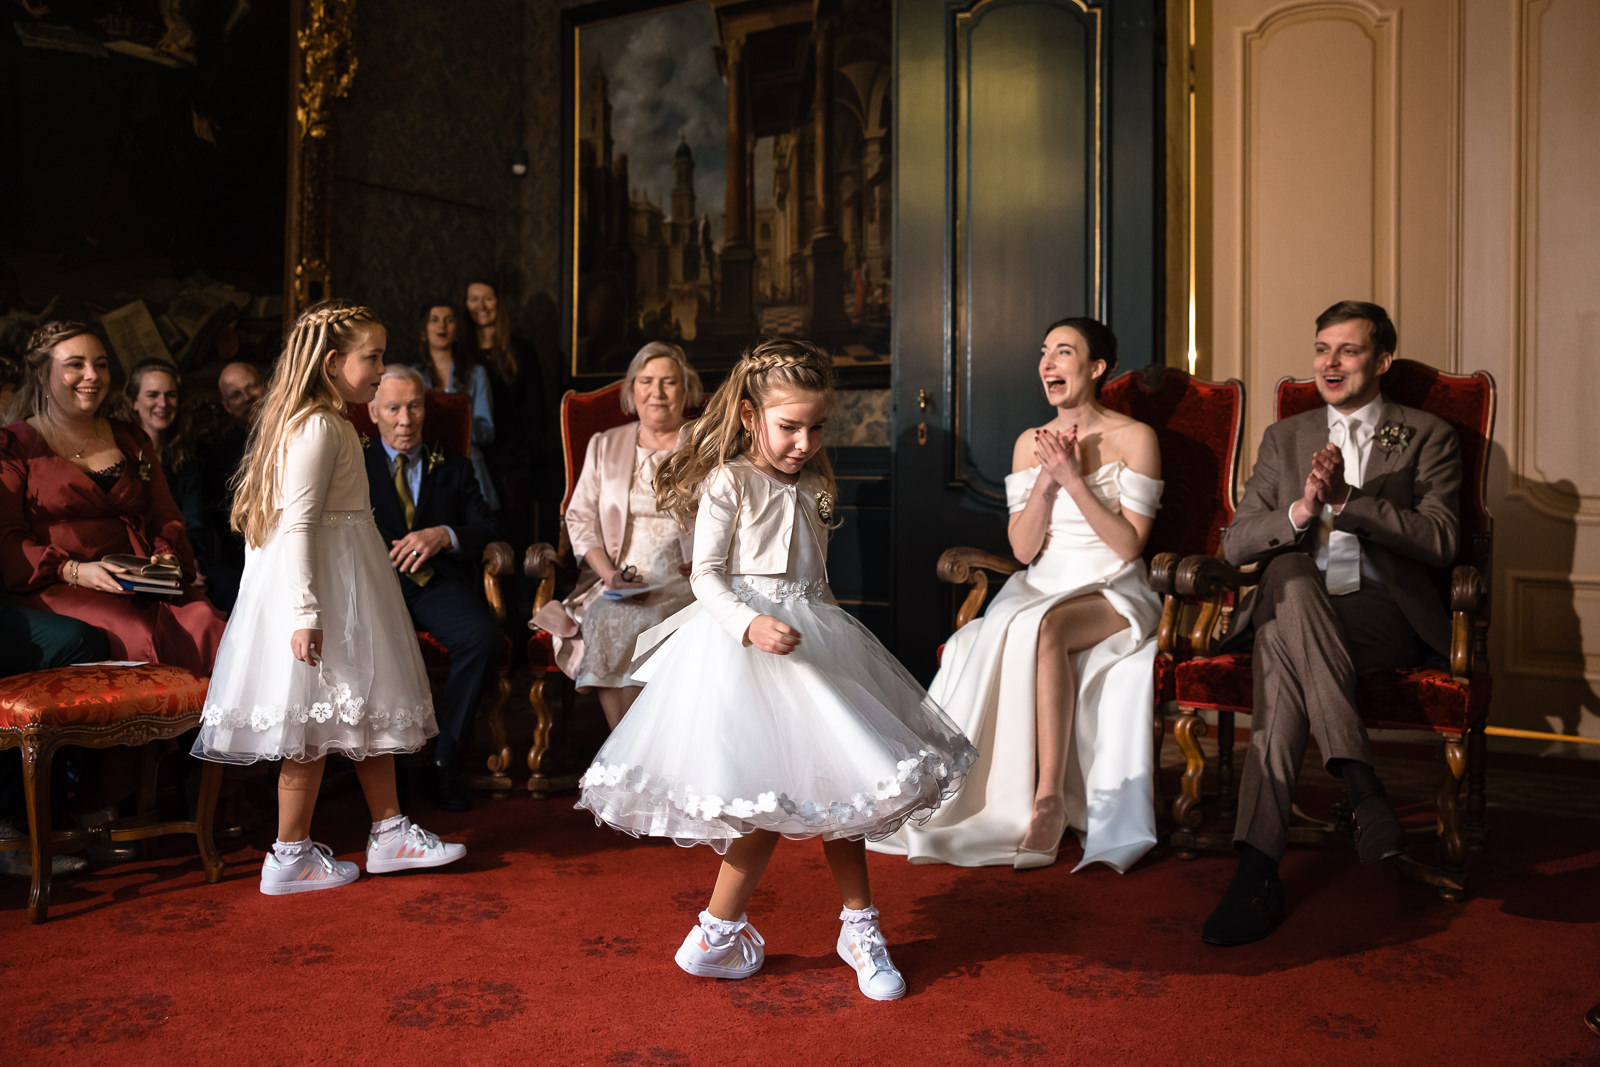 Bruidsmeisjes dansen tijdens trouwceremonie vastgelegd door Trouwfotograaf Den Haag Paco van Leeuwen